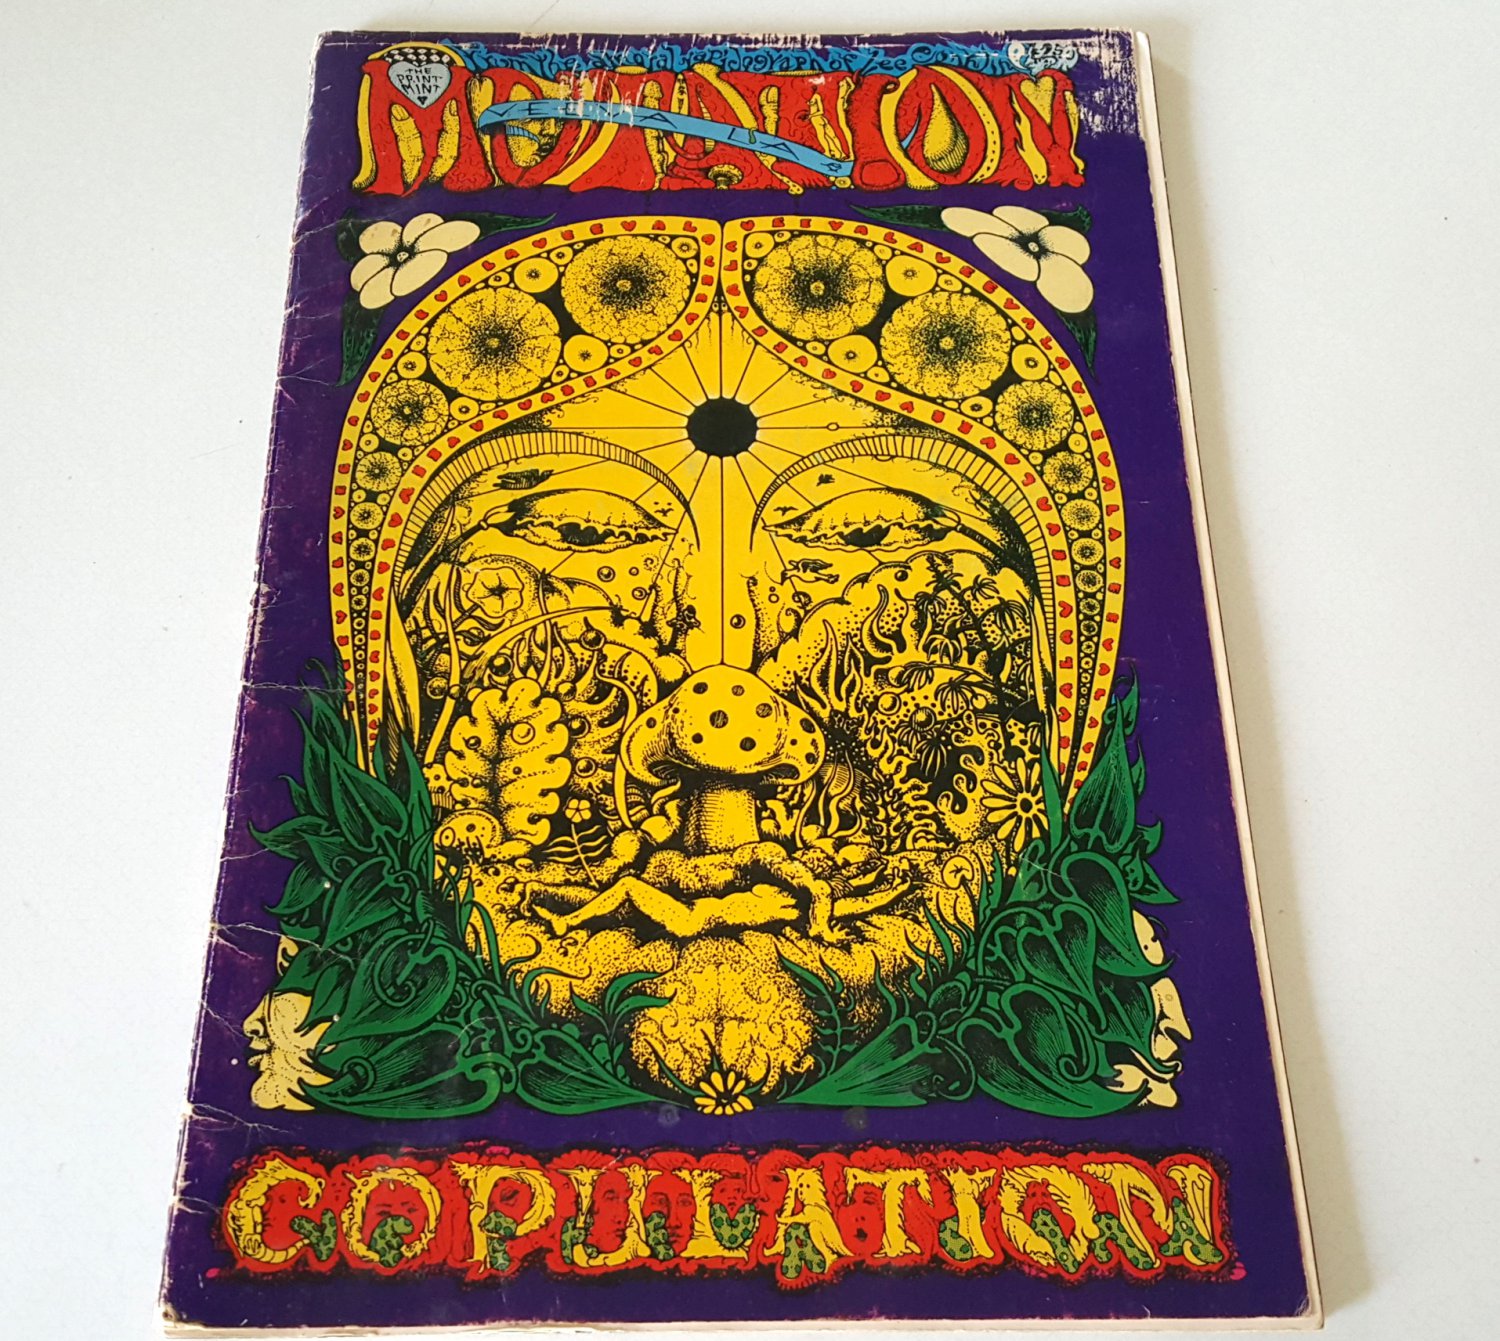 1971 Veeva la Mutation Copulation by Lee Conklin - Vintage Concert Art Poster Folio